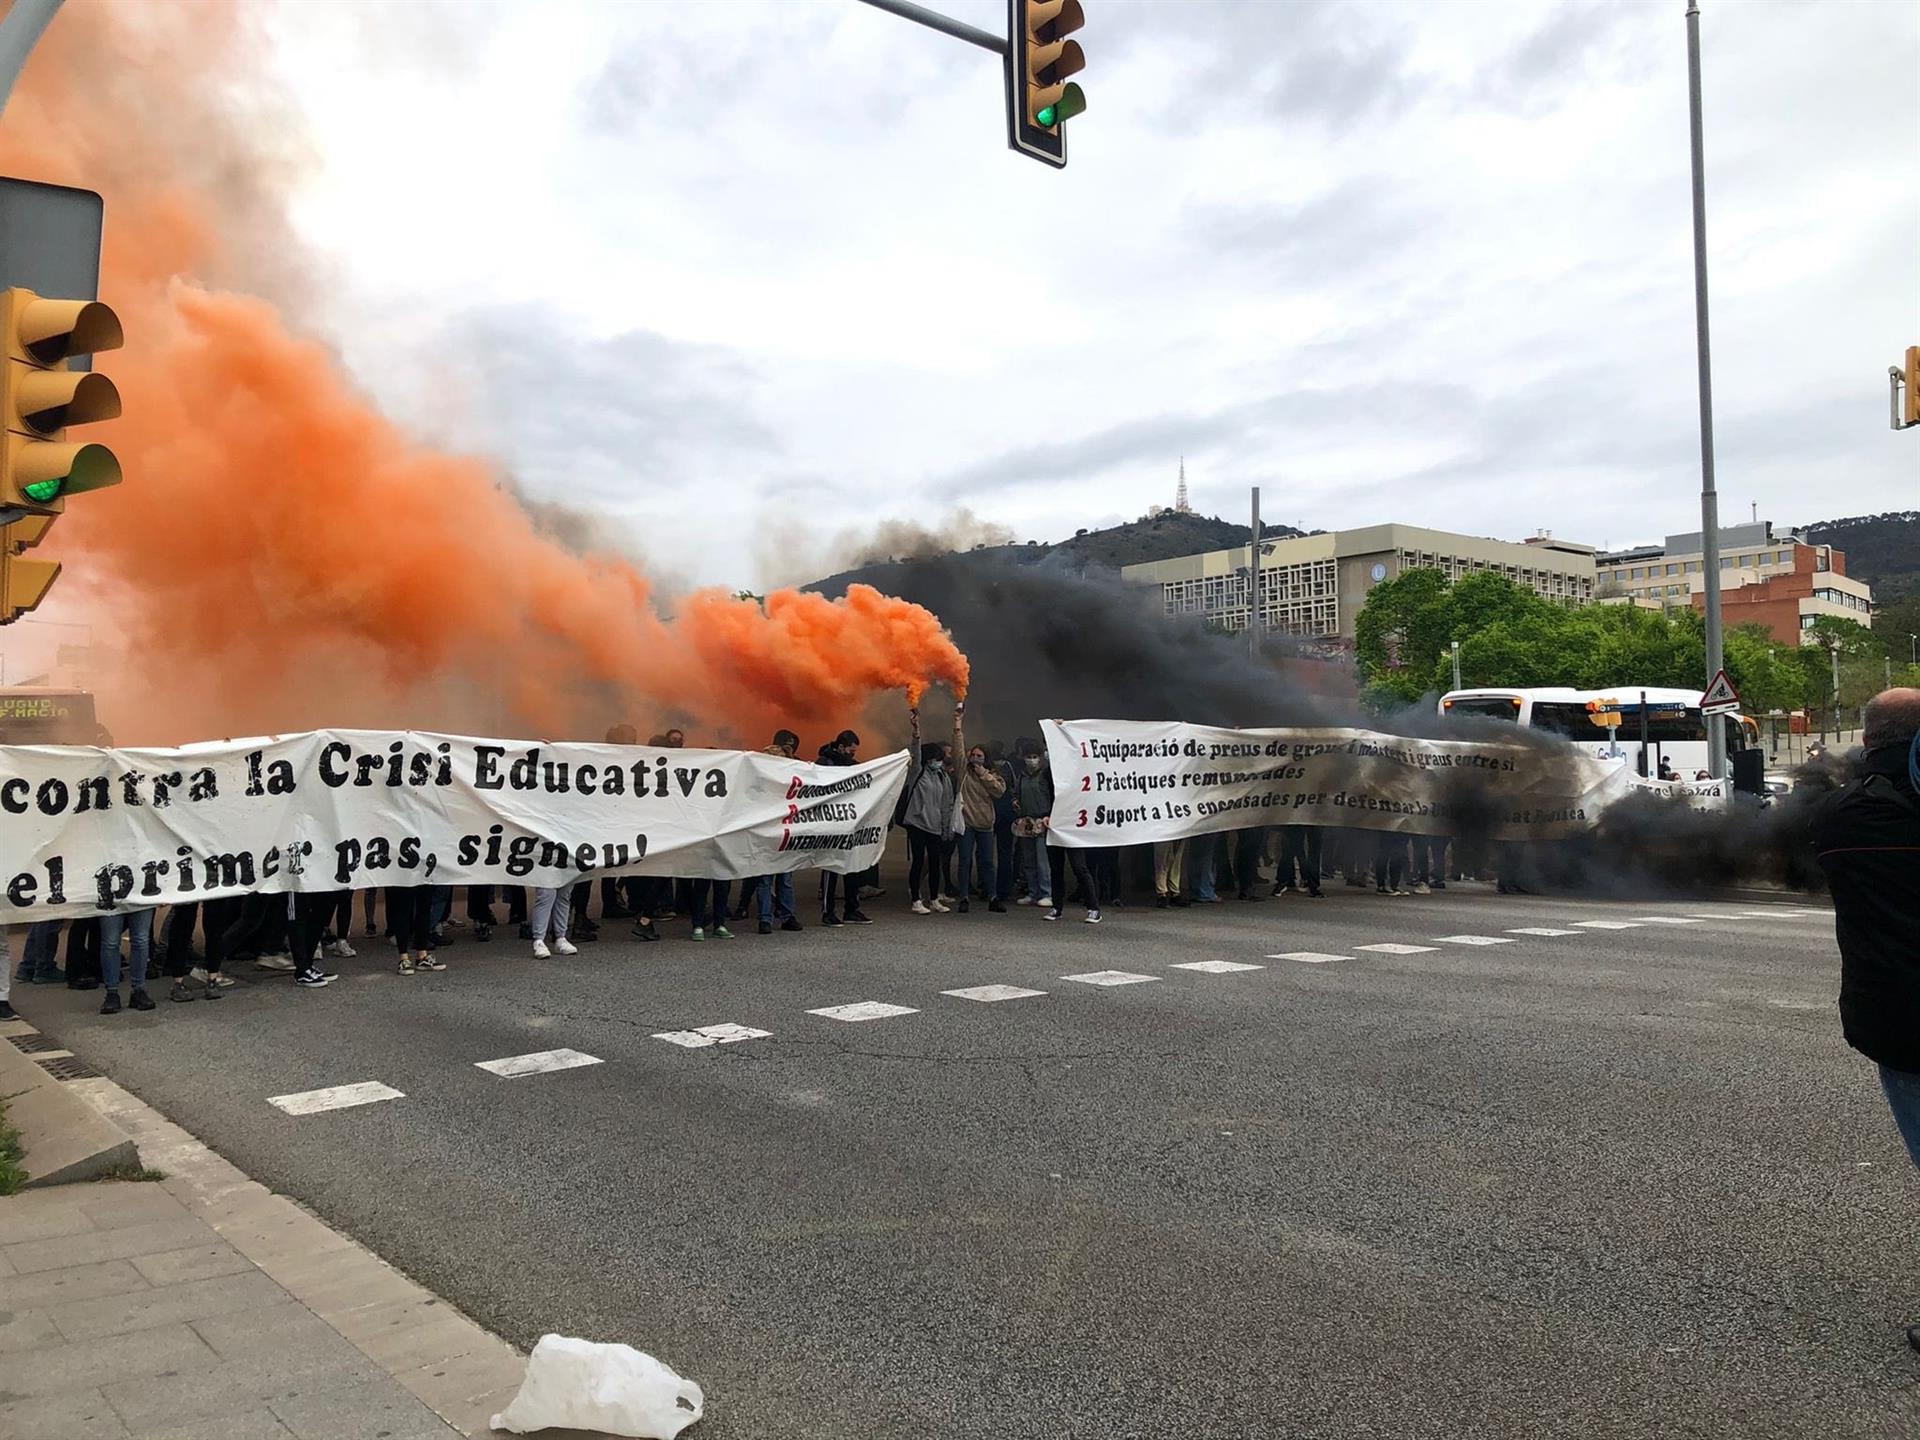 Los universitarios cortan la Diagonal en protesta por la "crisis educativa"